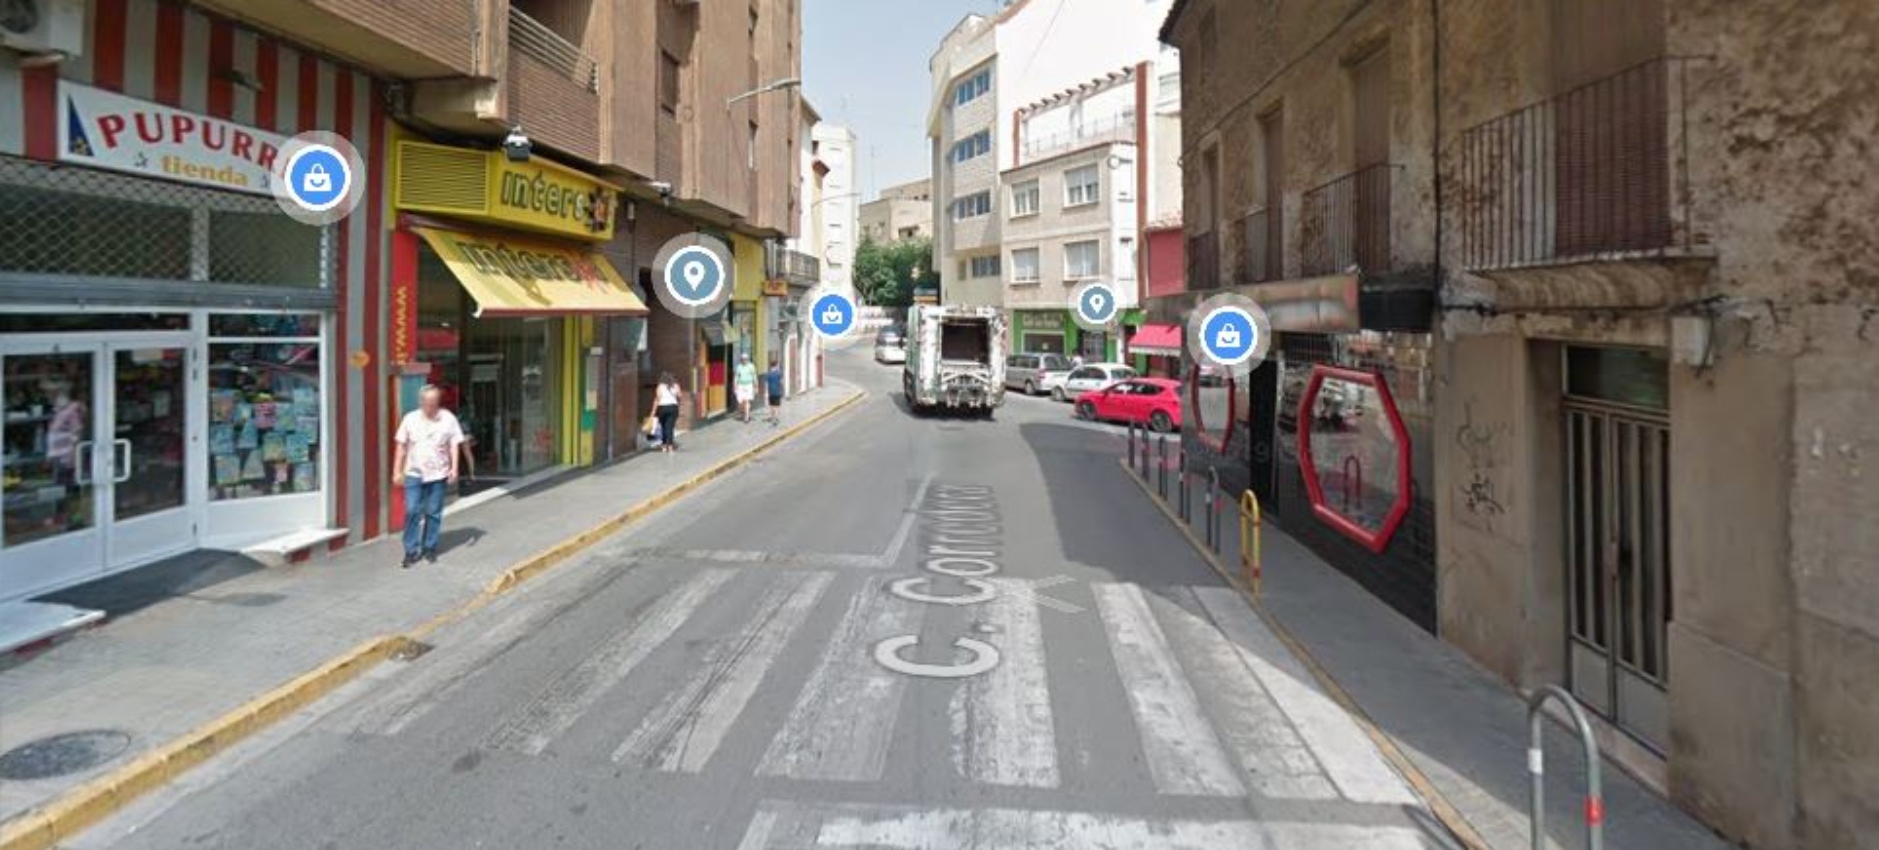 Calle Corredera, en Almansa (Albacete), vía en la que se ha producido el accidente. Imagen de Google Maps.